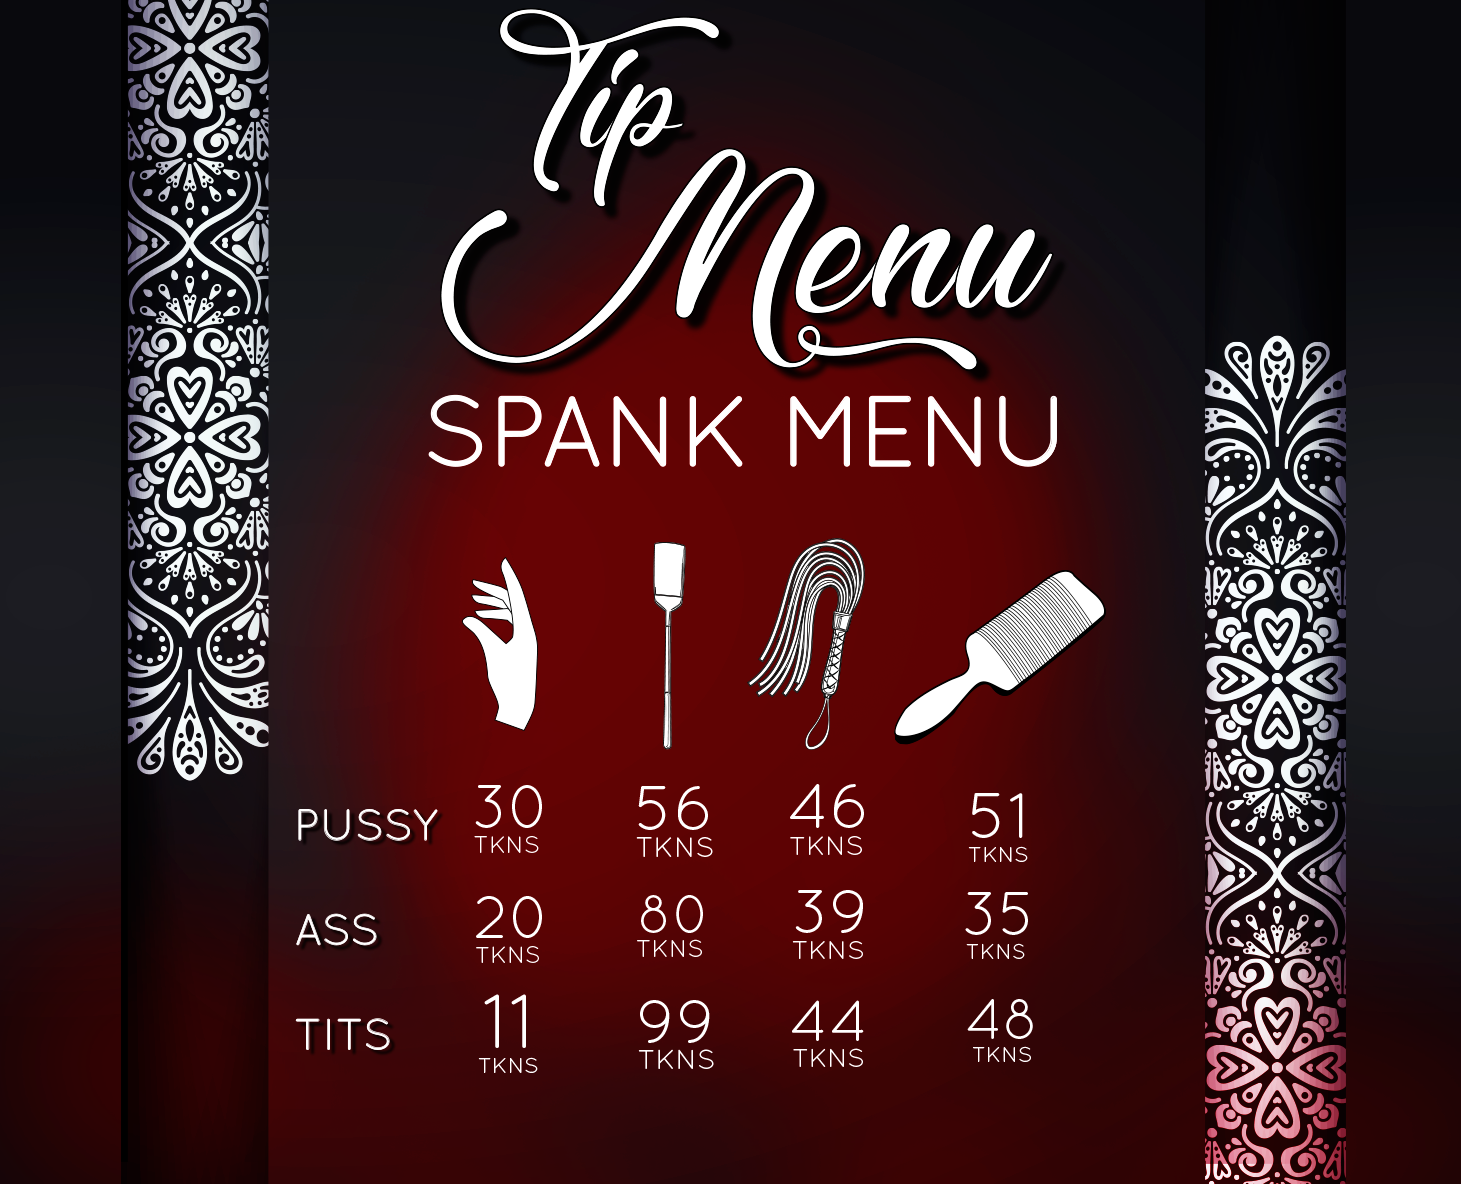 Image Tip Menu spank menu in Shan album.